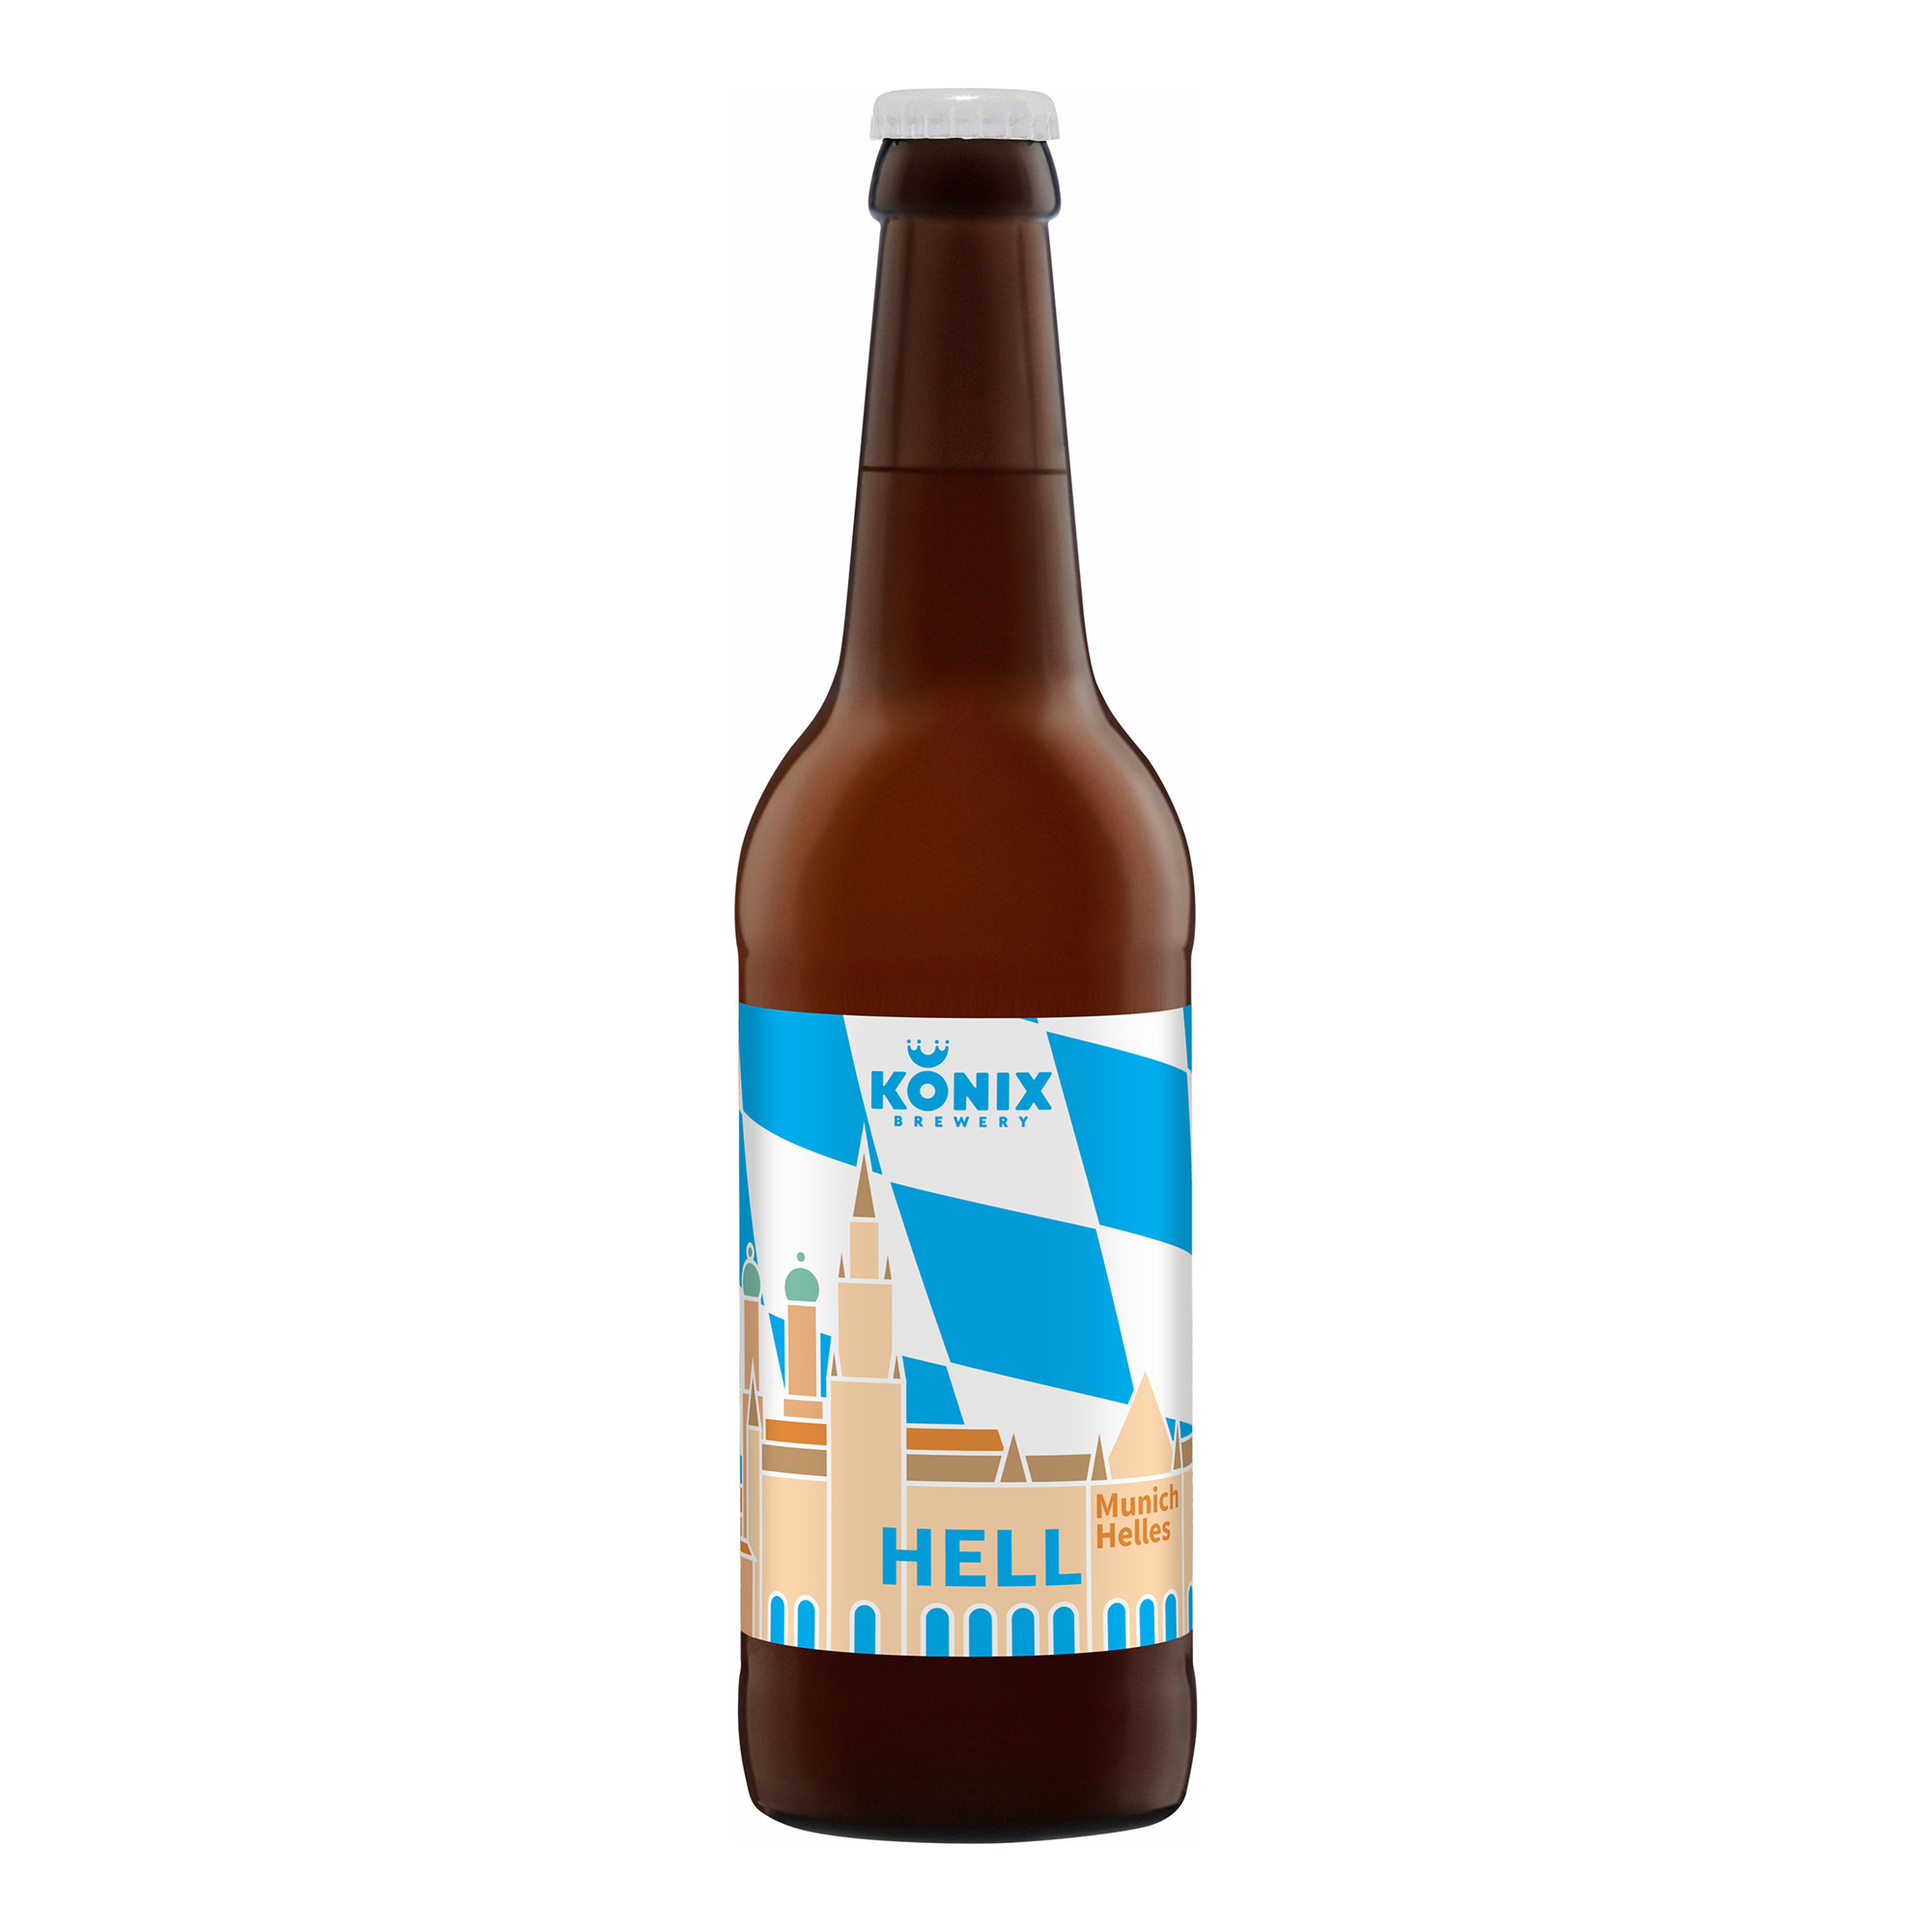 Пиво Konix Brewery Munich Helles осветленное нефильтрованное 4,7% 0,5 л - купить в Москве, цены на Мегамаркет | 100060811301